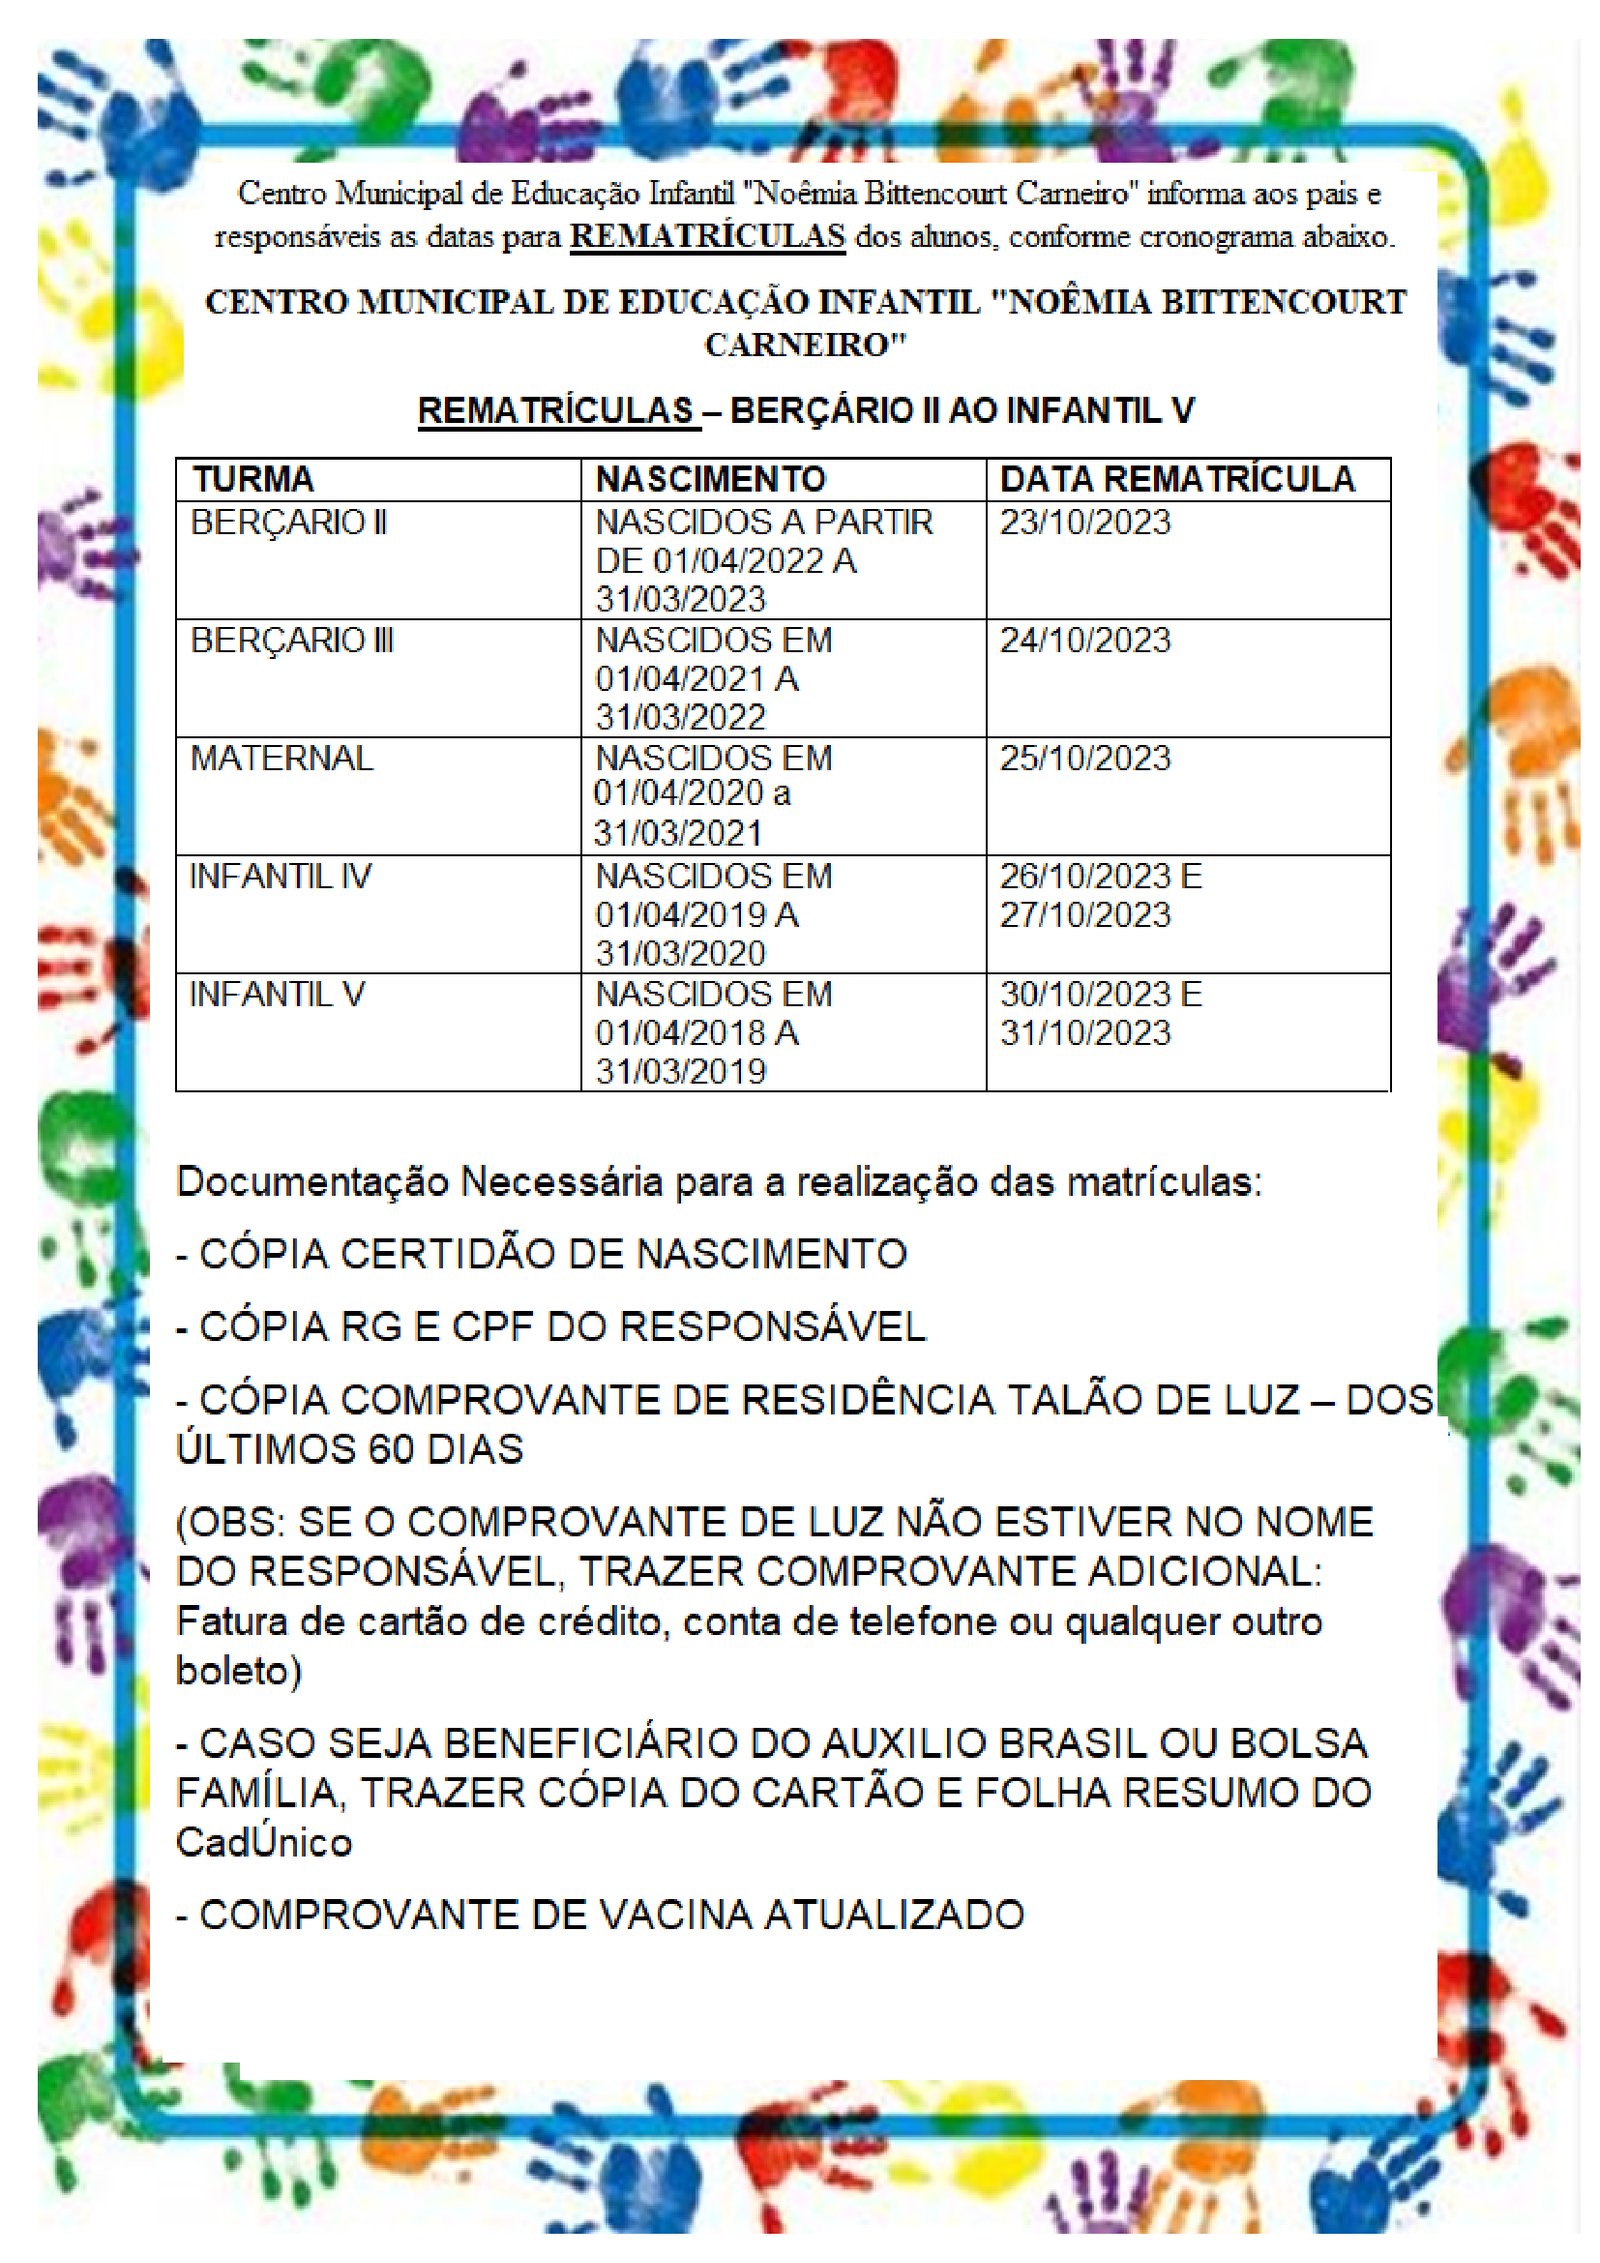 REMATRÍCULA PARA BERÇARIO II AO INFANTIL V - Centro Municipal de Educação Infantil 